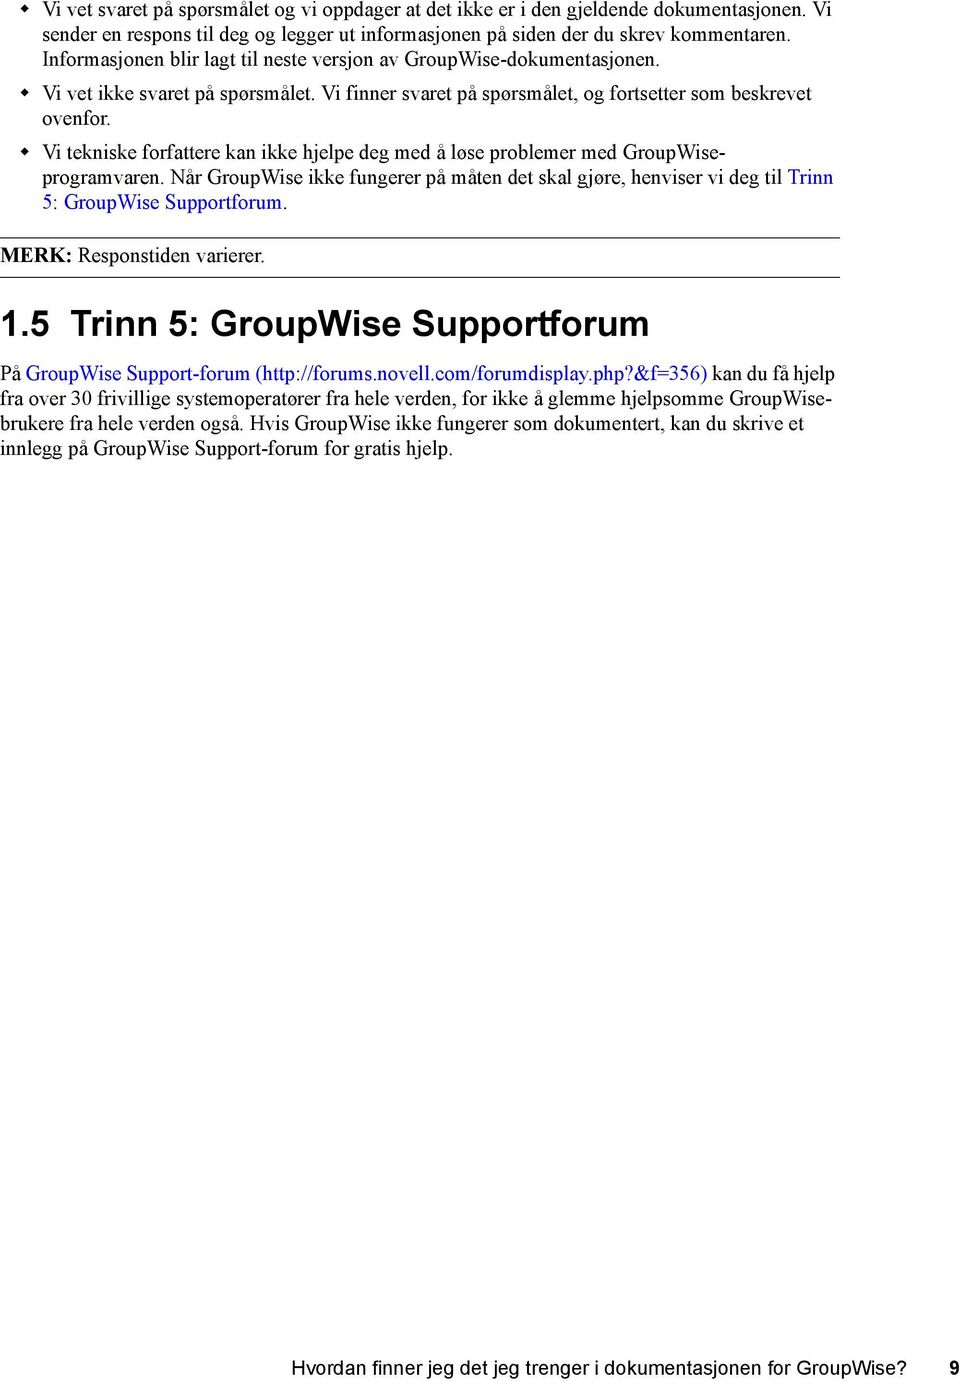 Vi tekniske forfattere kan ikke hjelpe deg med å løse problemer med GroupWiseprogramvaren. Når GroupWise ikke fungerer på måten det skal gjøre, henviser vi deg til Trinn 5: GroupWise Supportforum.